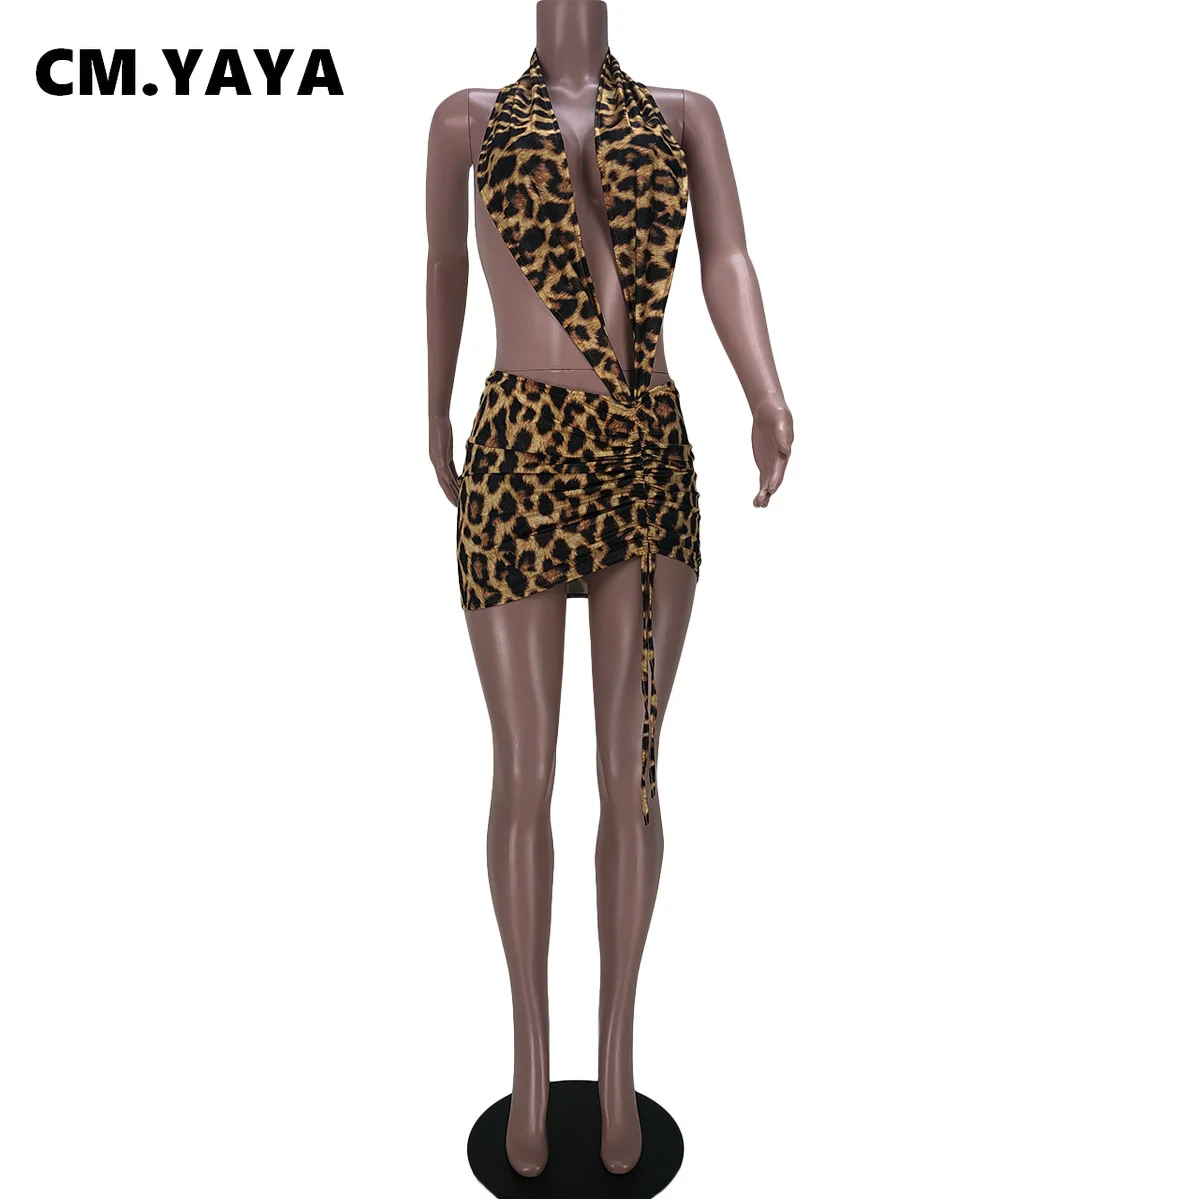 Женское платье с леопардовым принтом CM.YAYA ажурное эластичное платье-футляр